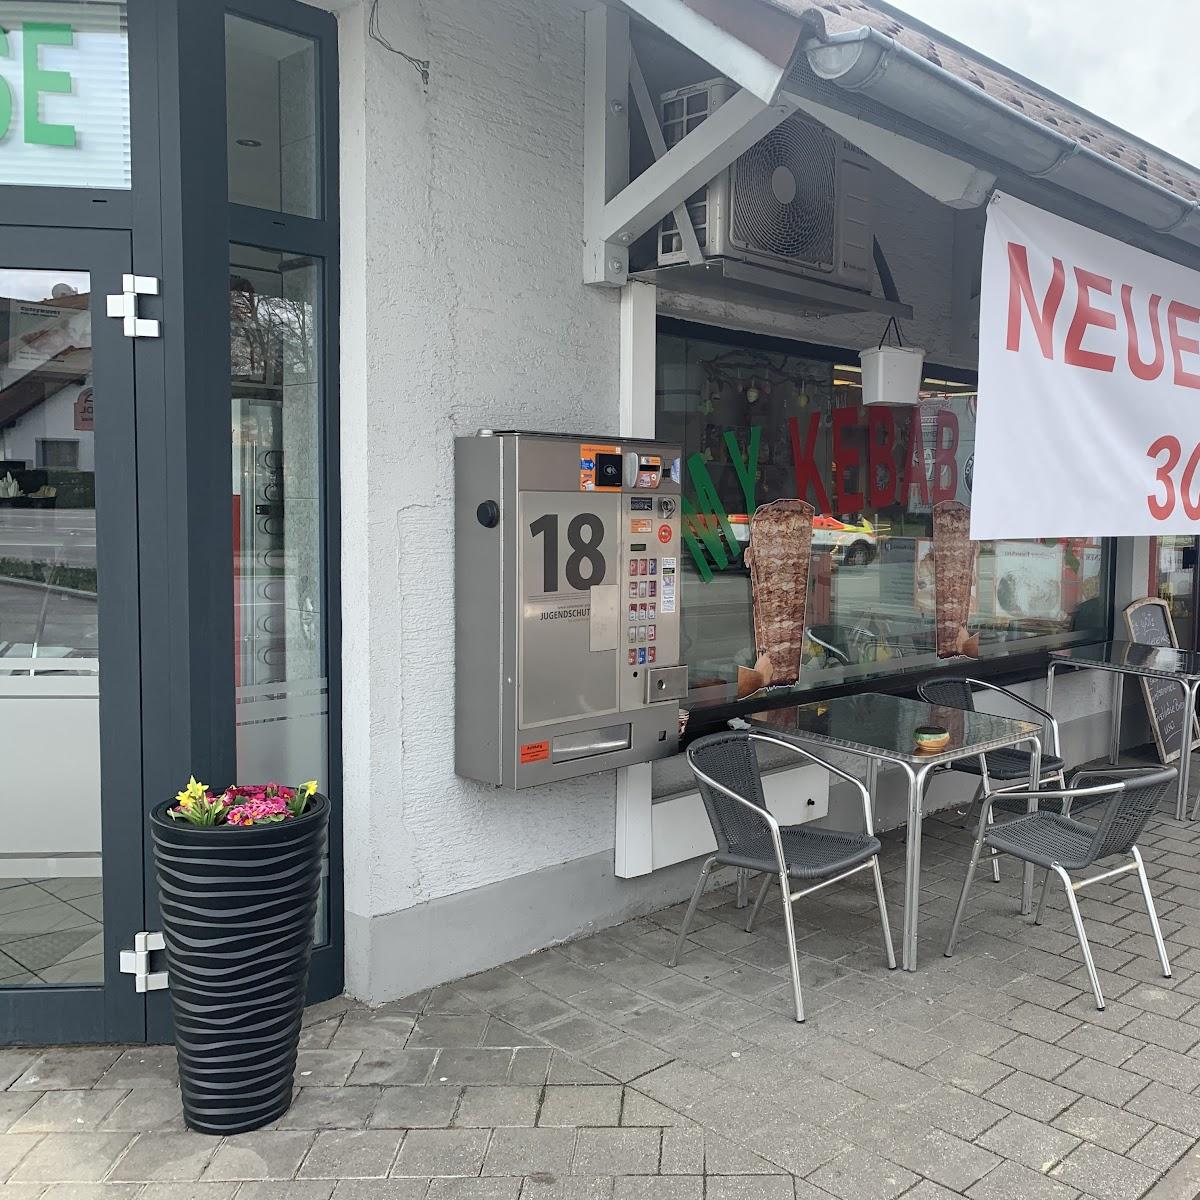 Restaurant "My Kebab House" in Neustadt an der Donau